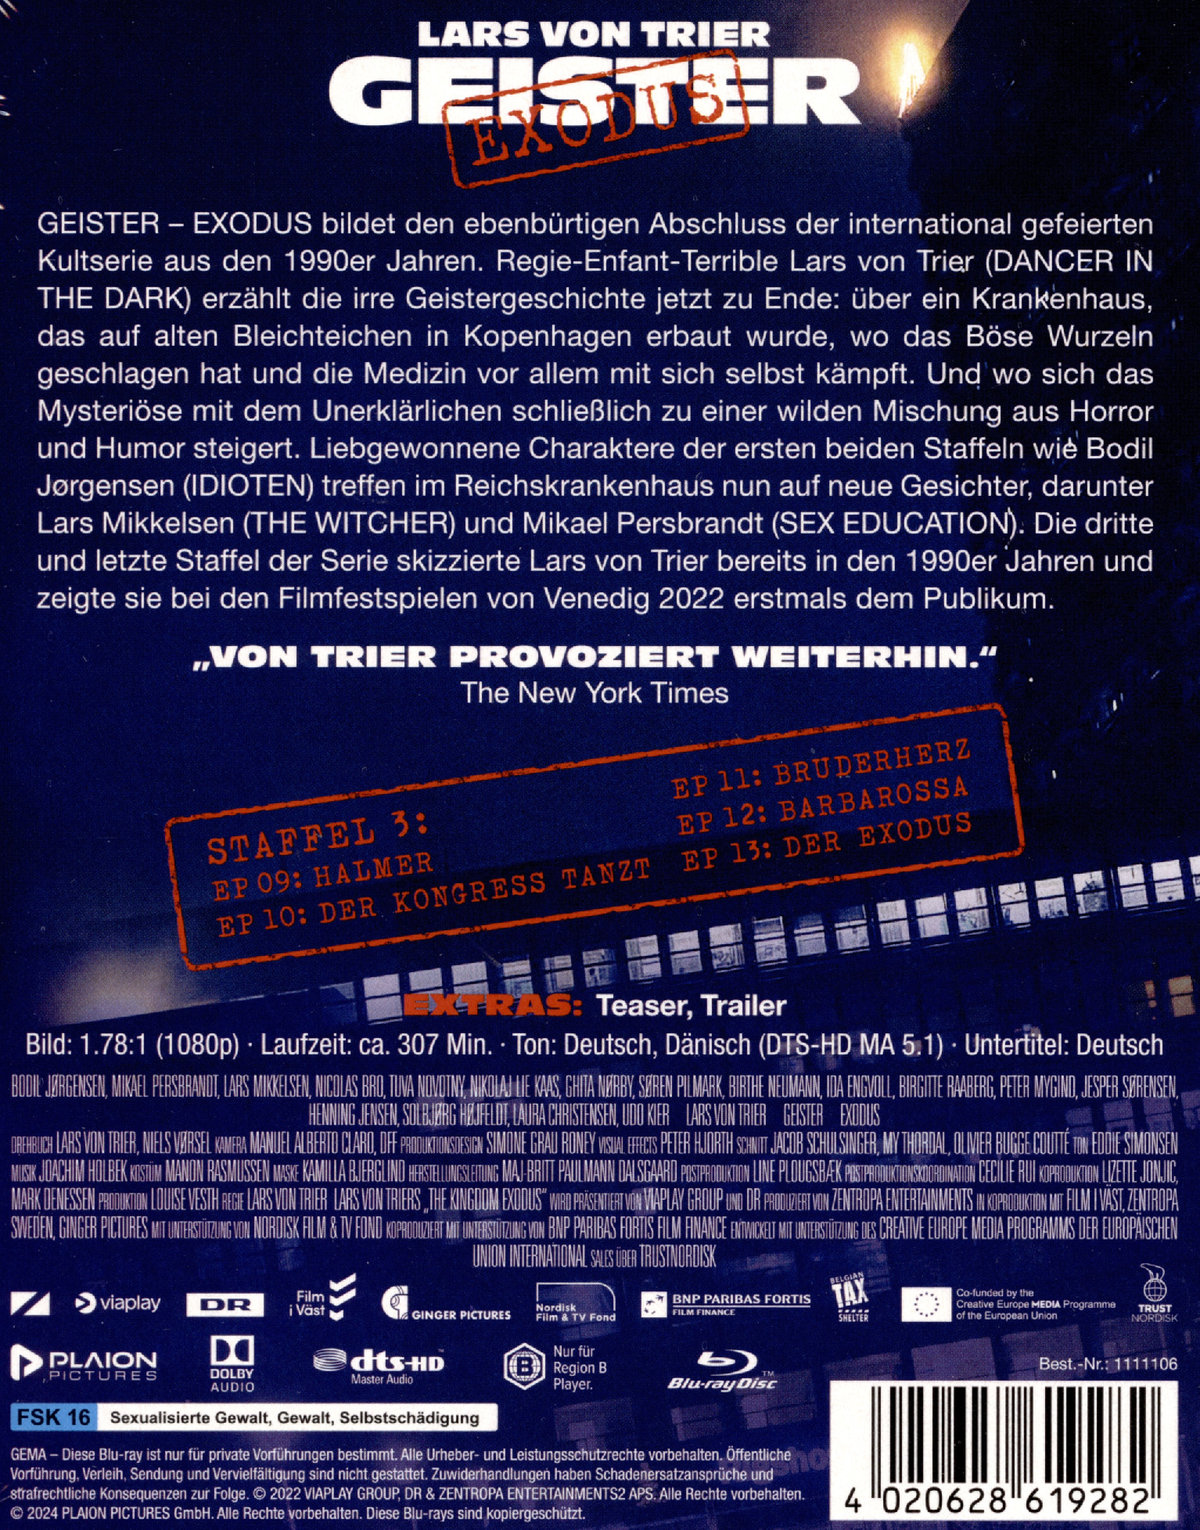 Geister: Exodus (Lars von Trier) (blu-ray)